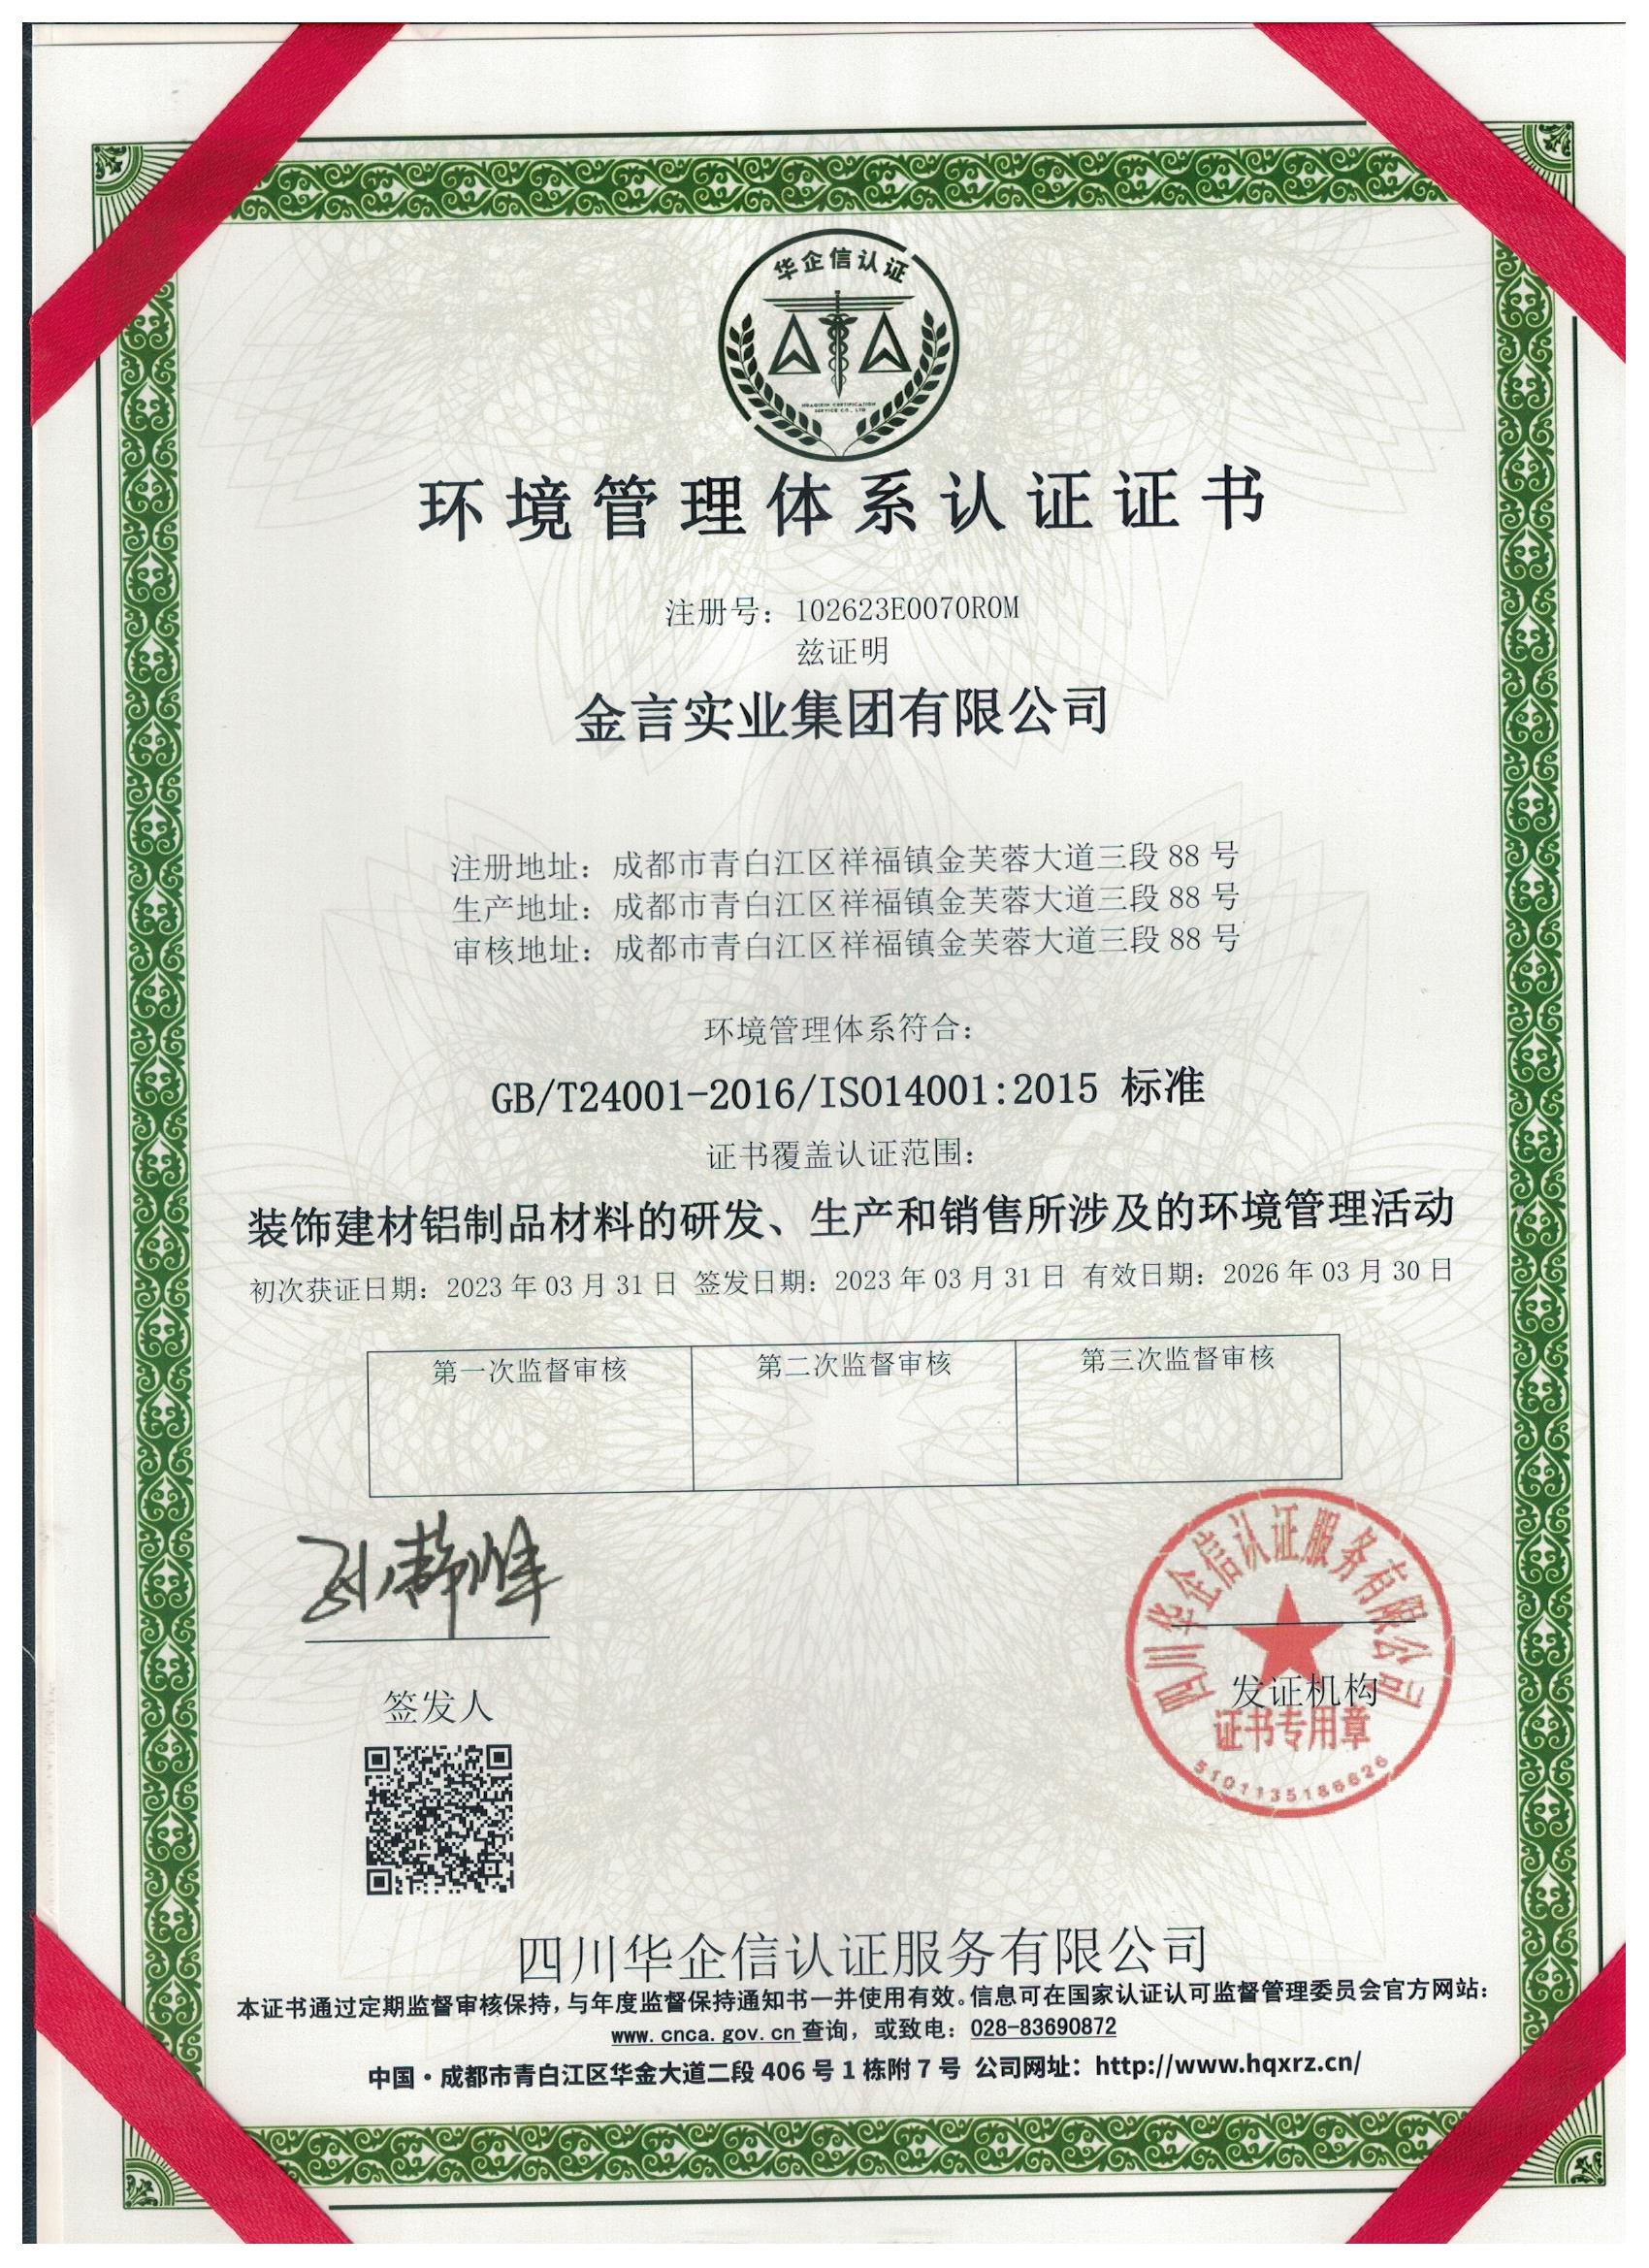 ISO14001情况治理体系认证